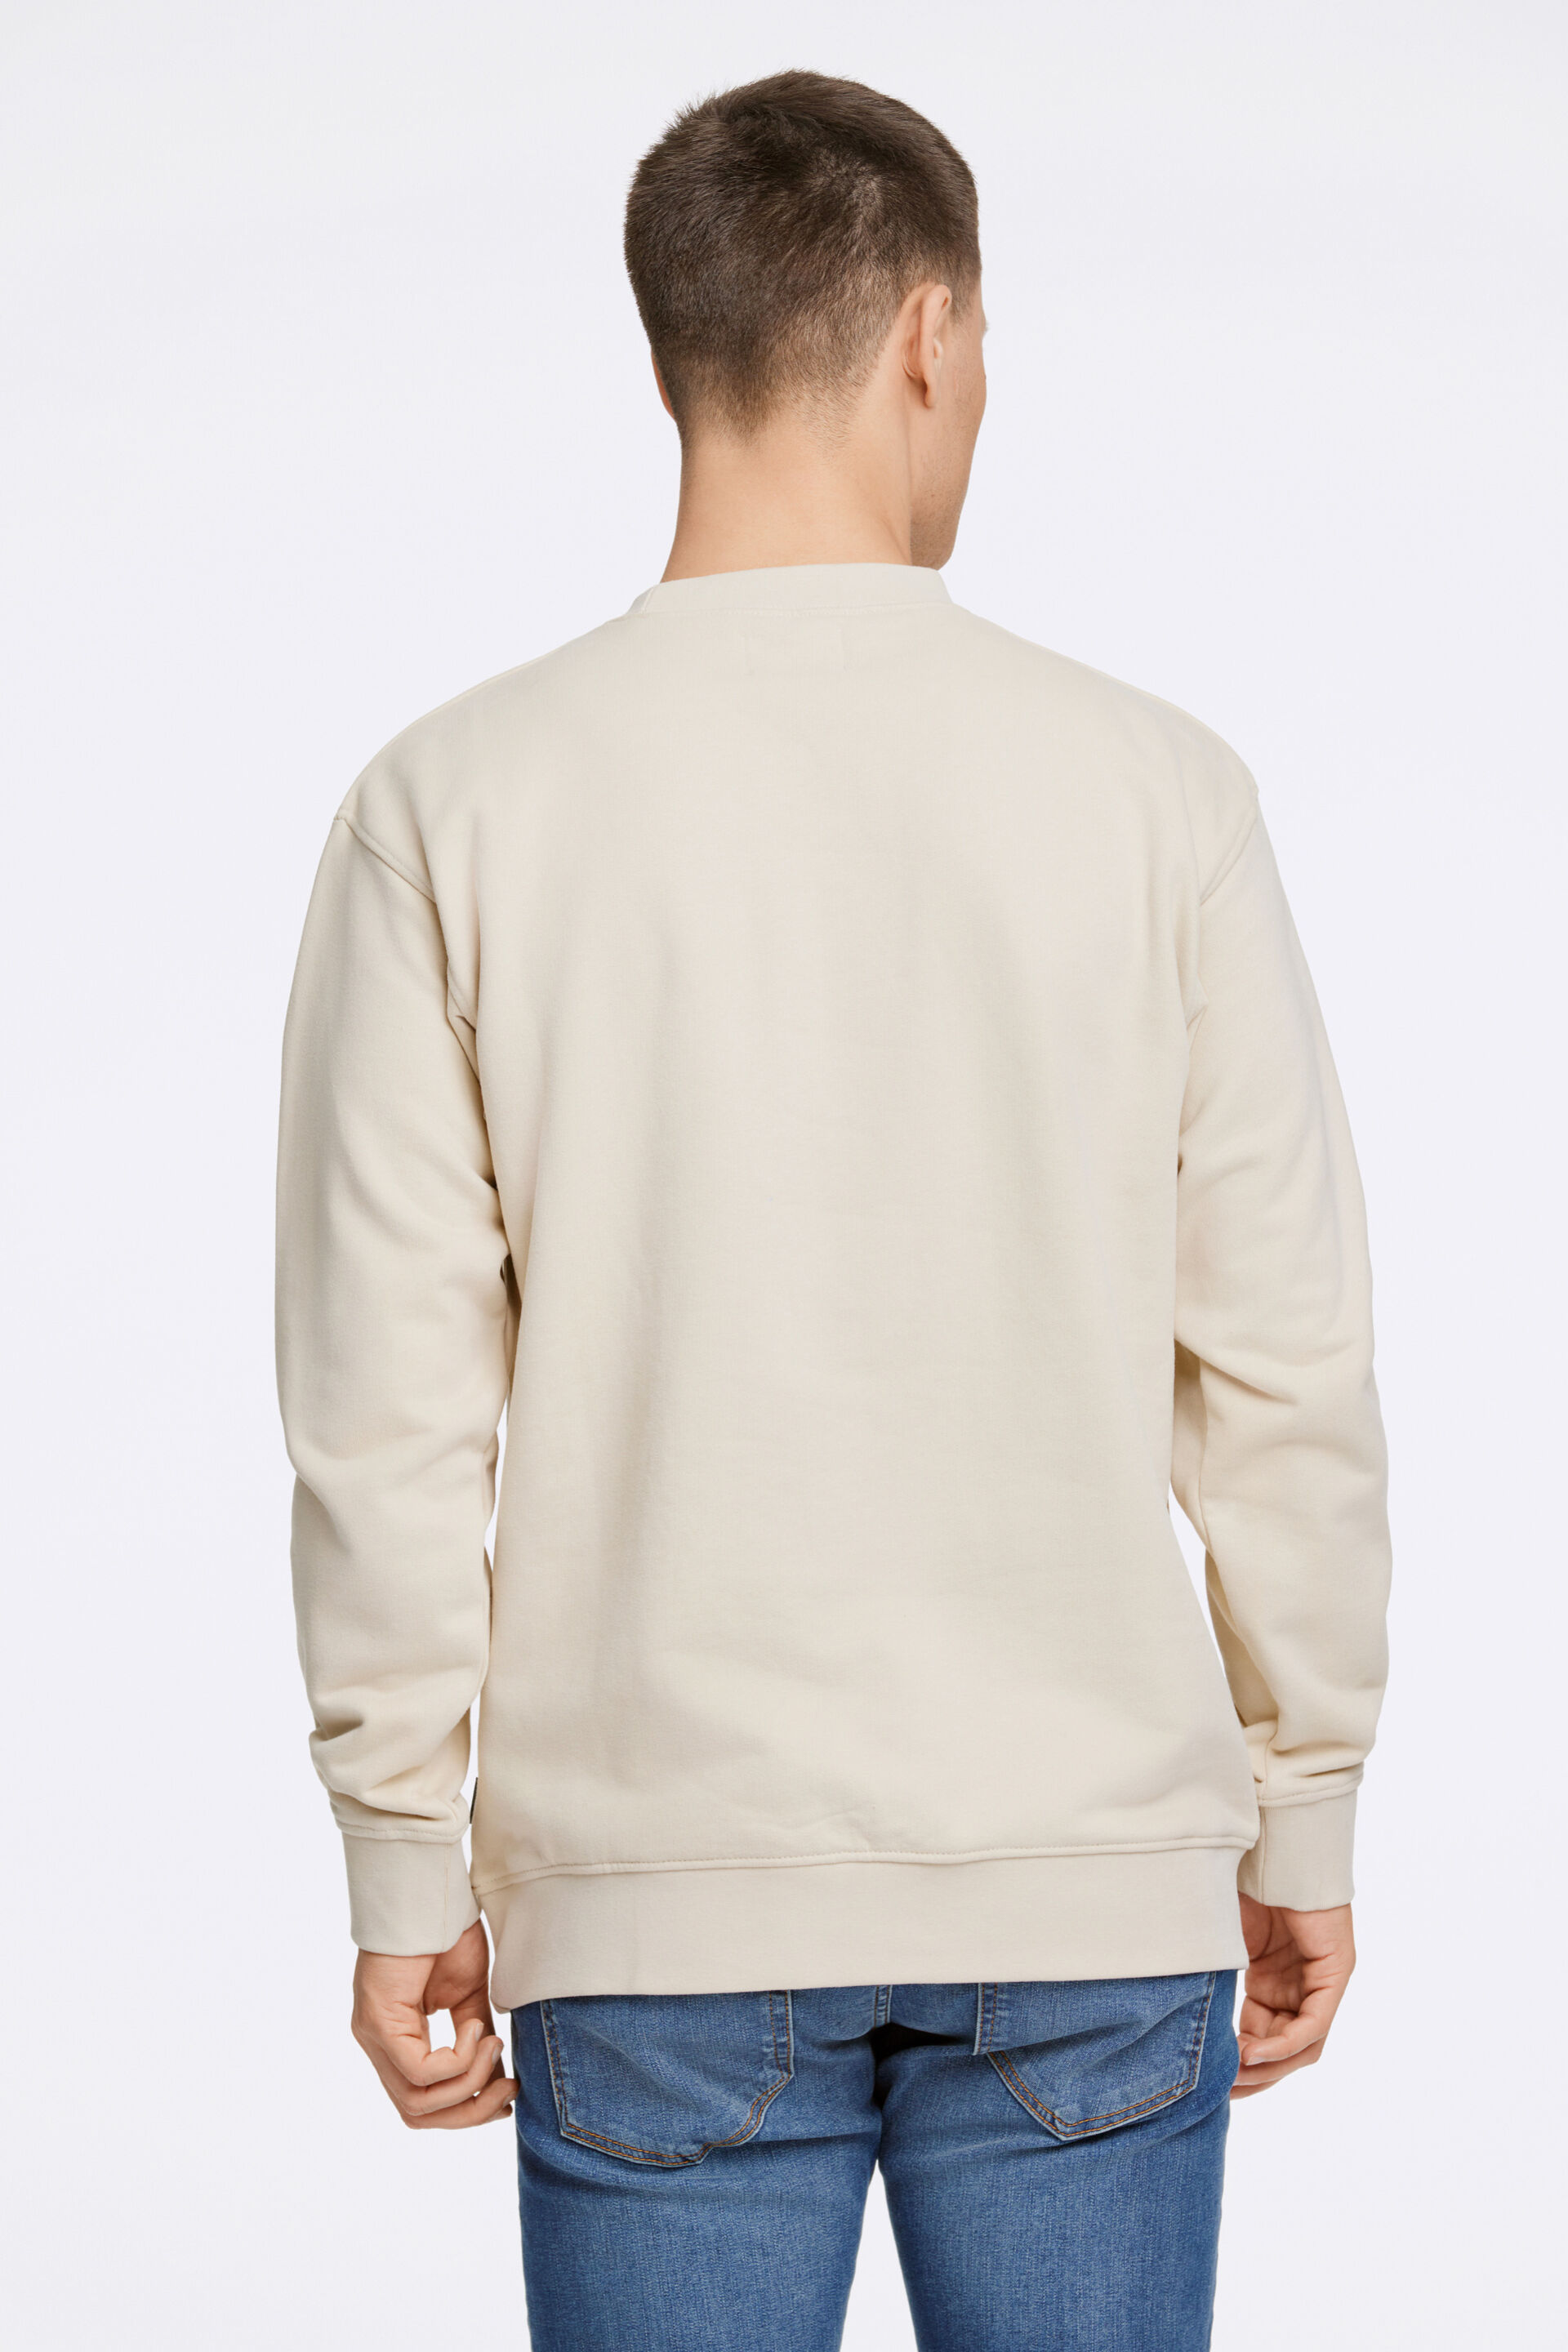 Junk de Luxe  Sweatshirt 60-702020